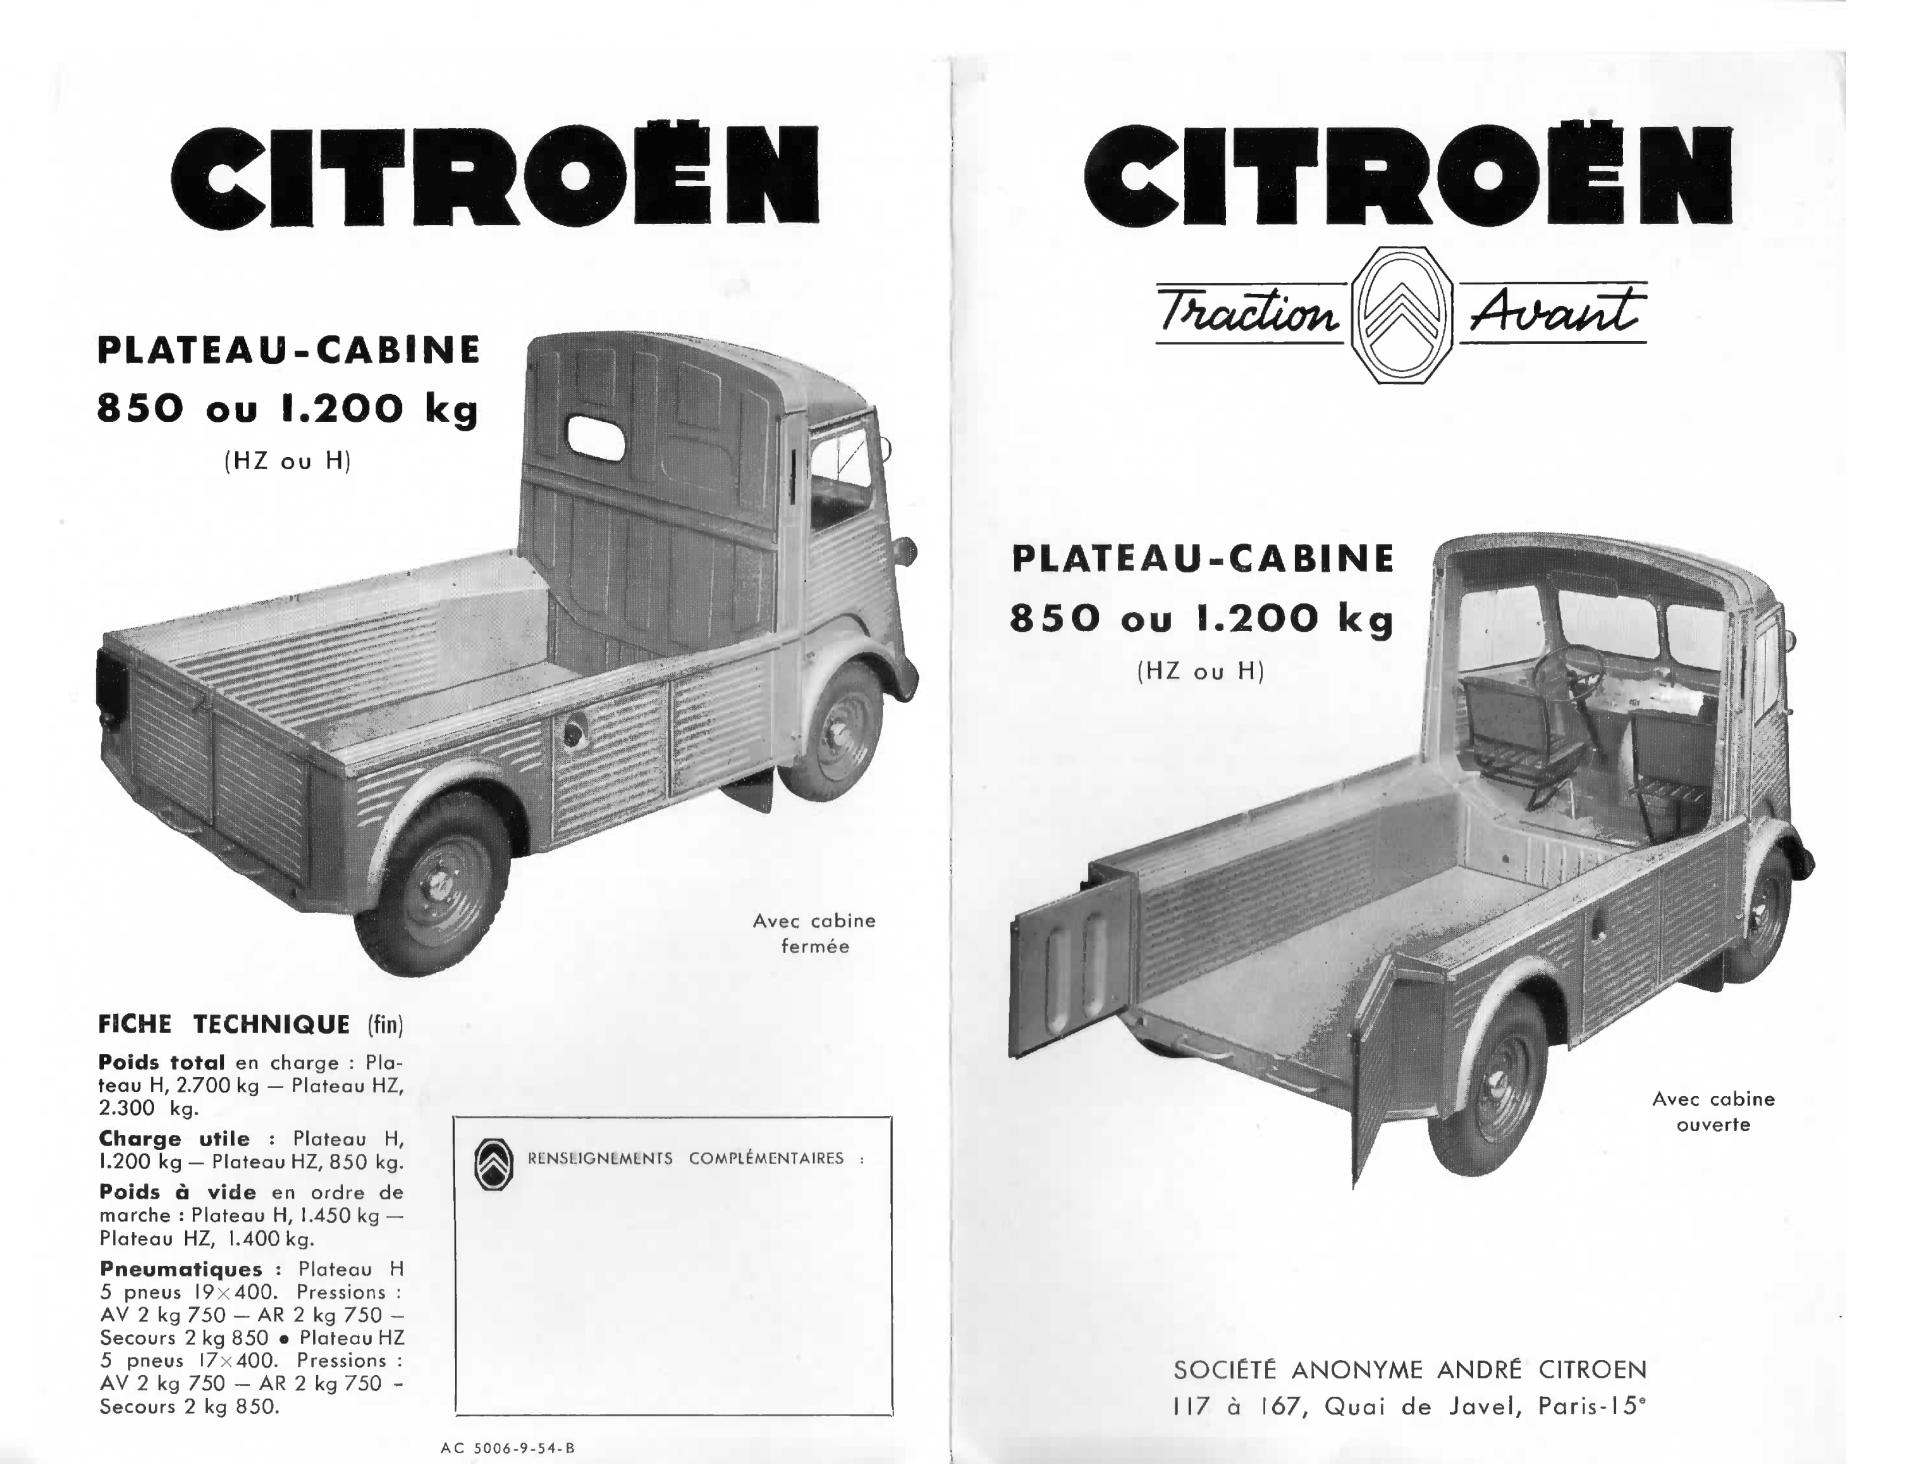 1954 Citroën type H plateau